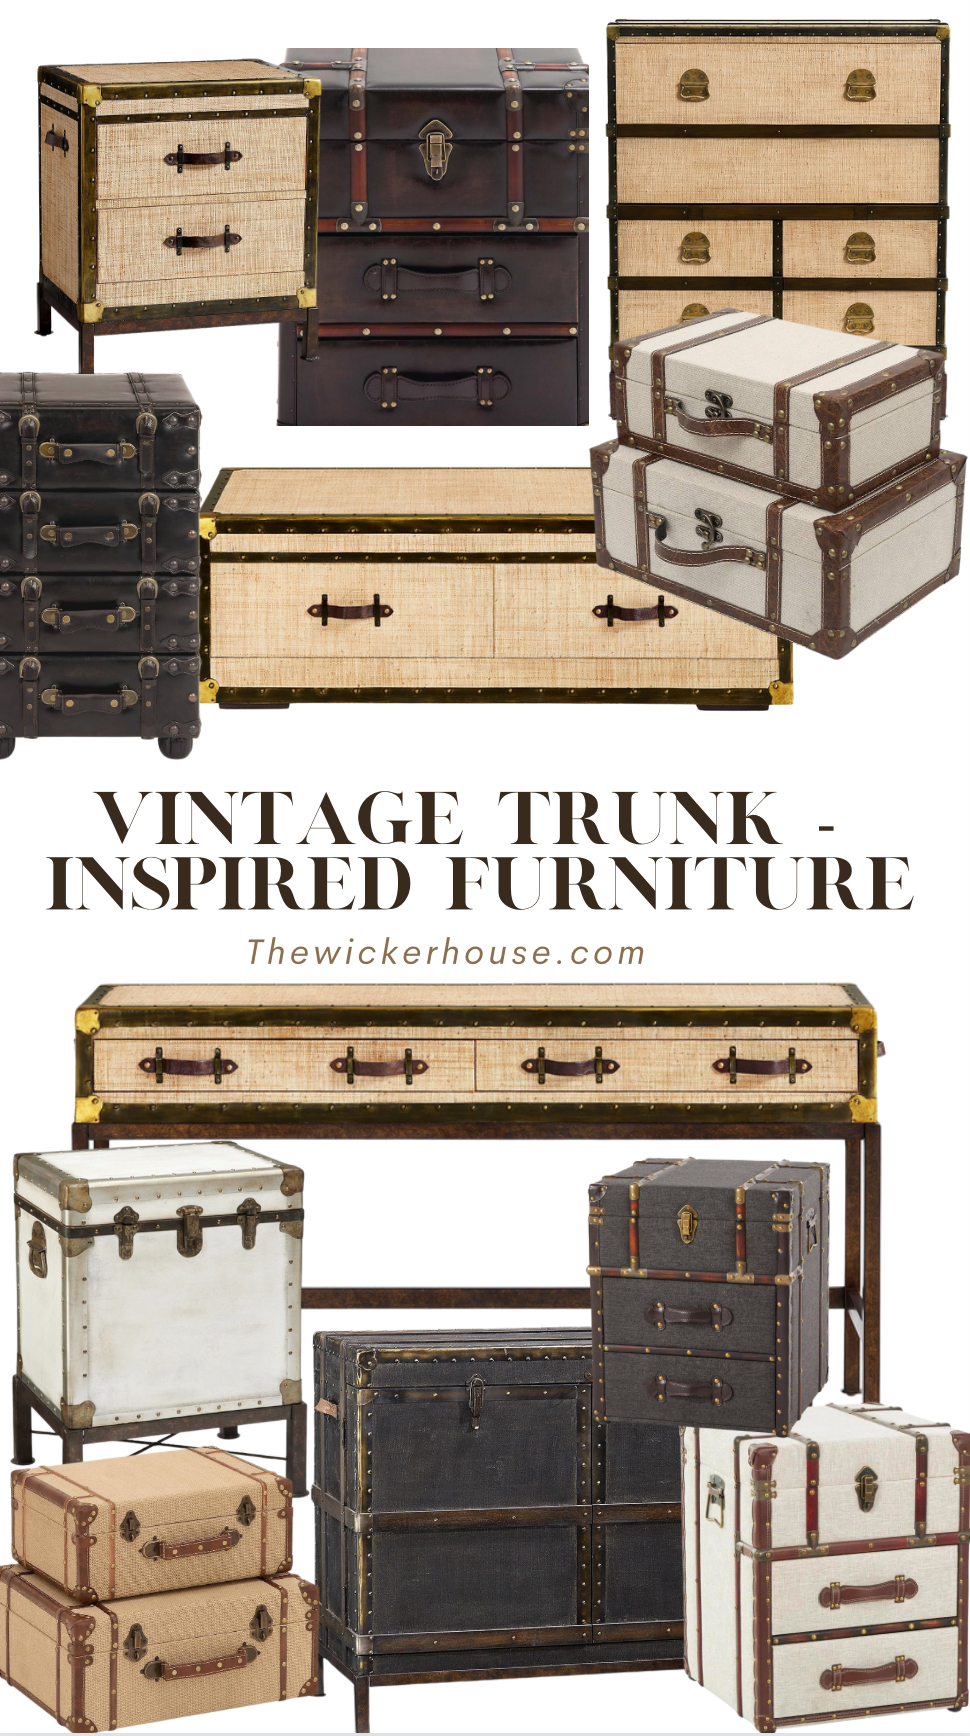 Vintage Trunk – Inspired Furniture